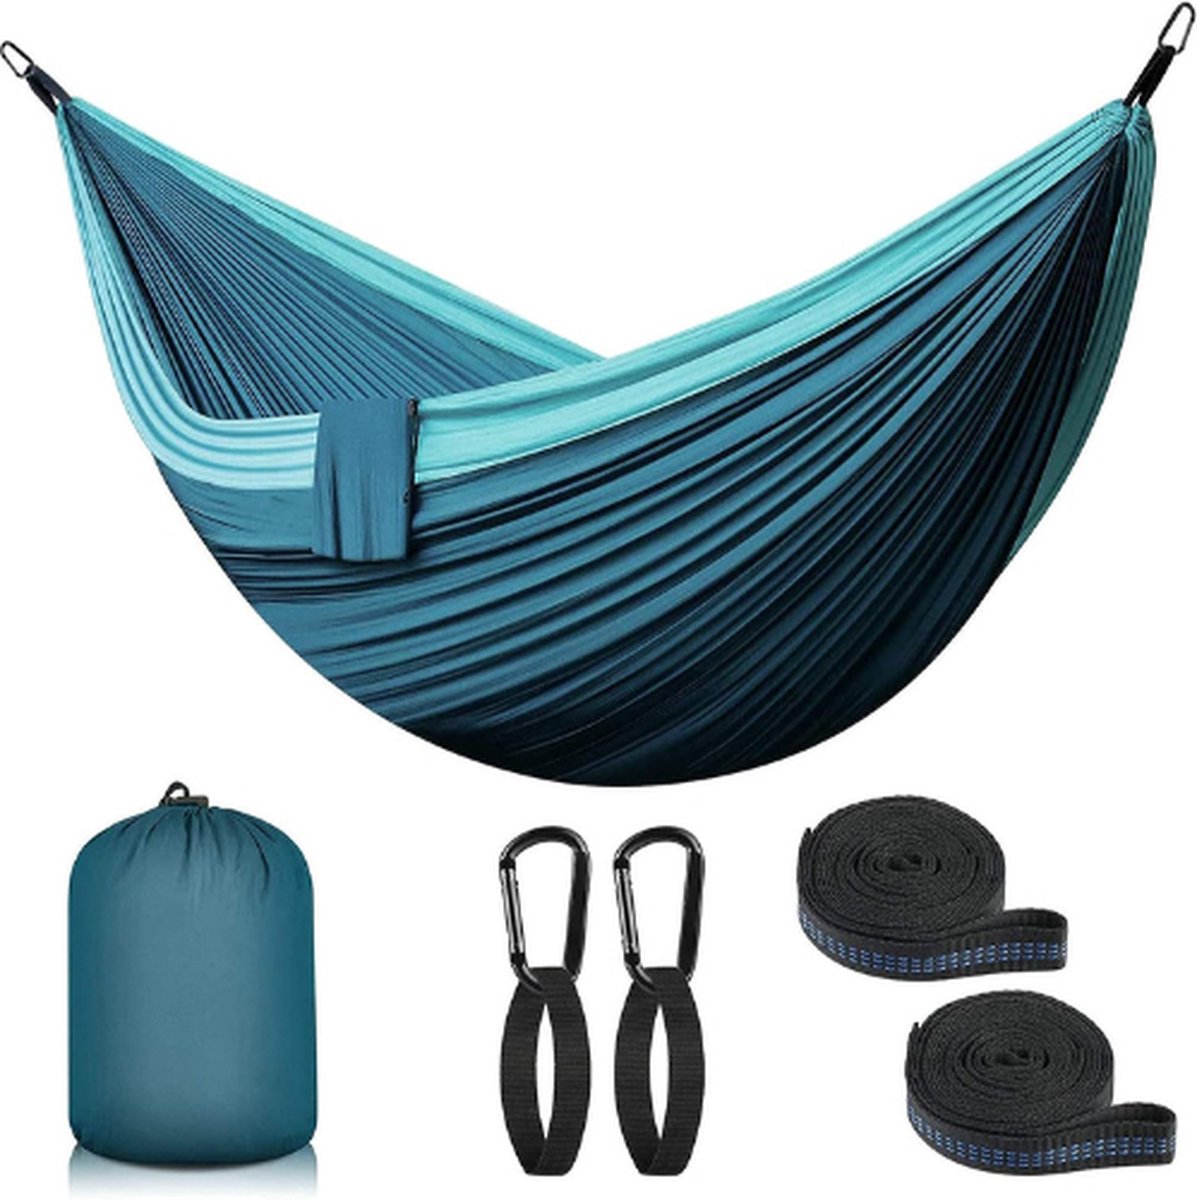 Hangmat Outdoor Camping XXL - 2 Persoons Hangmat - 300x200cm - Ultralichte Draagbare Reishangmat - tot 300 kg - Dubbele Hangmat - met Draagtas en Accessoires (8721022418278)